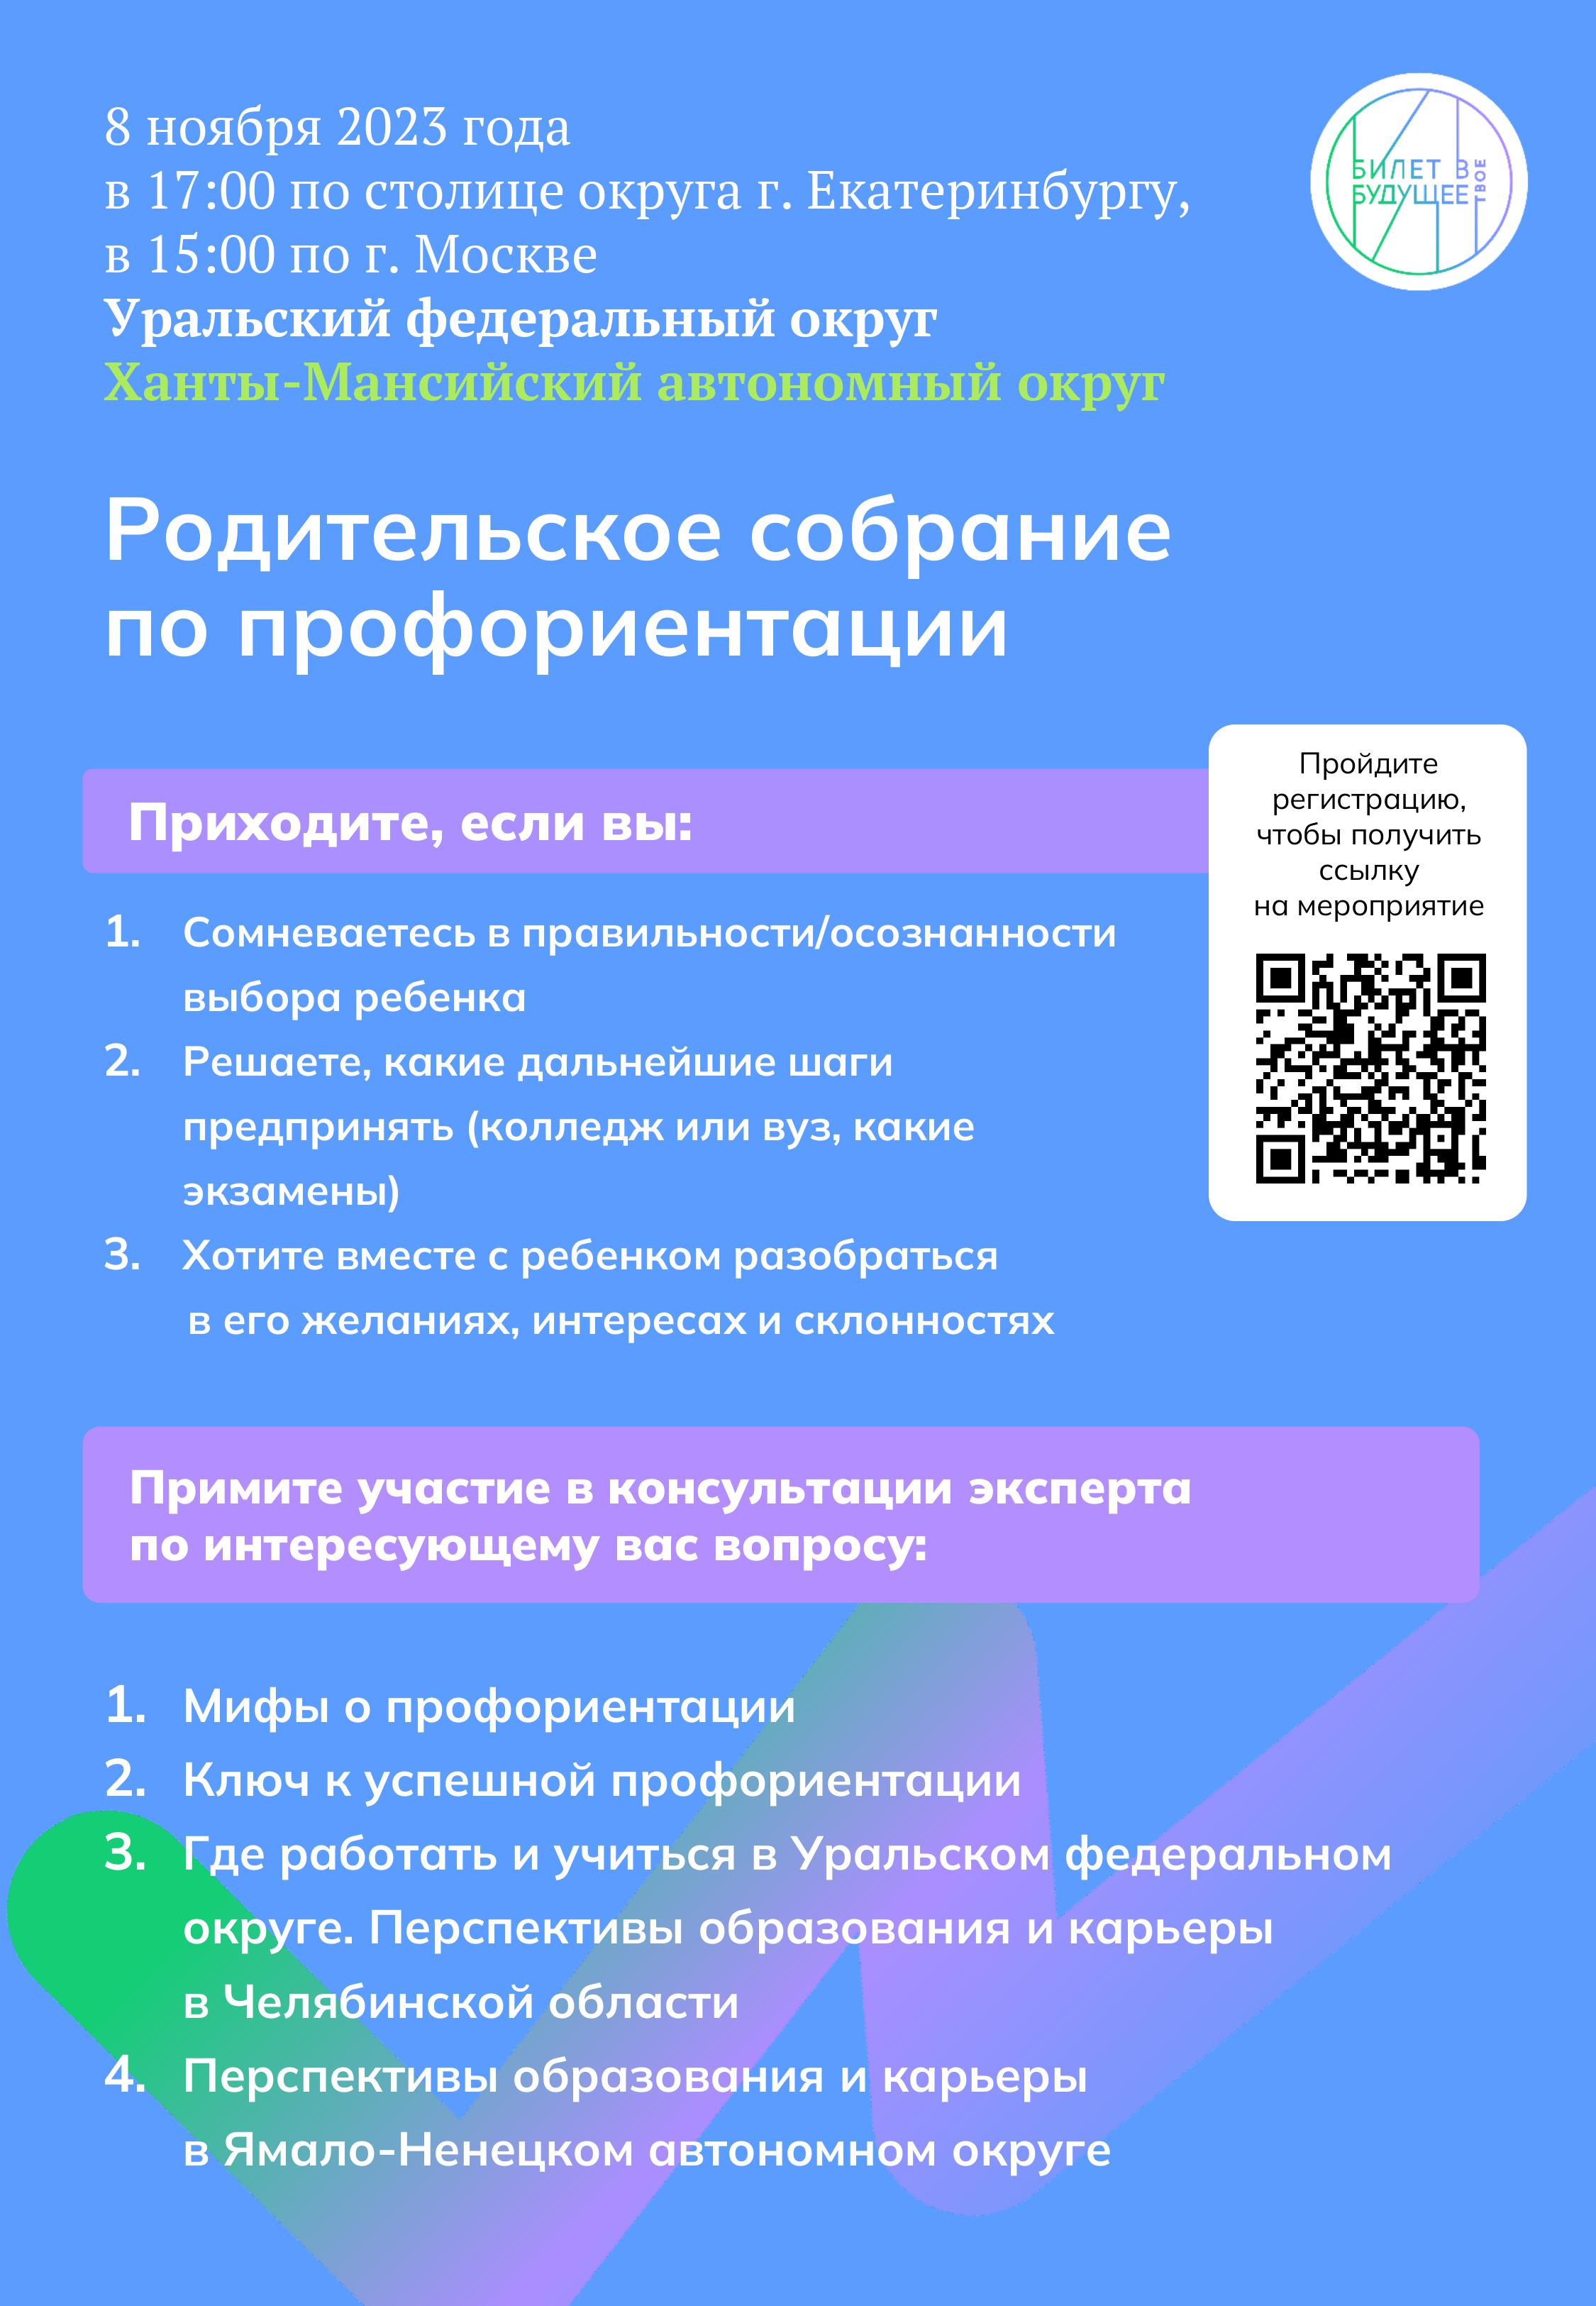 РОДИТЕЛЬСКОЕ СОБАНИЕ по вопросам профориентации школьников 6-11 классов, организованного для Уральского федерального округа.